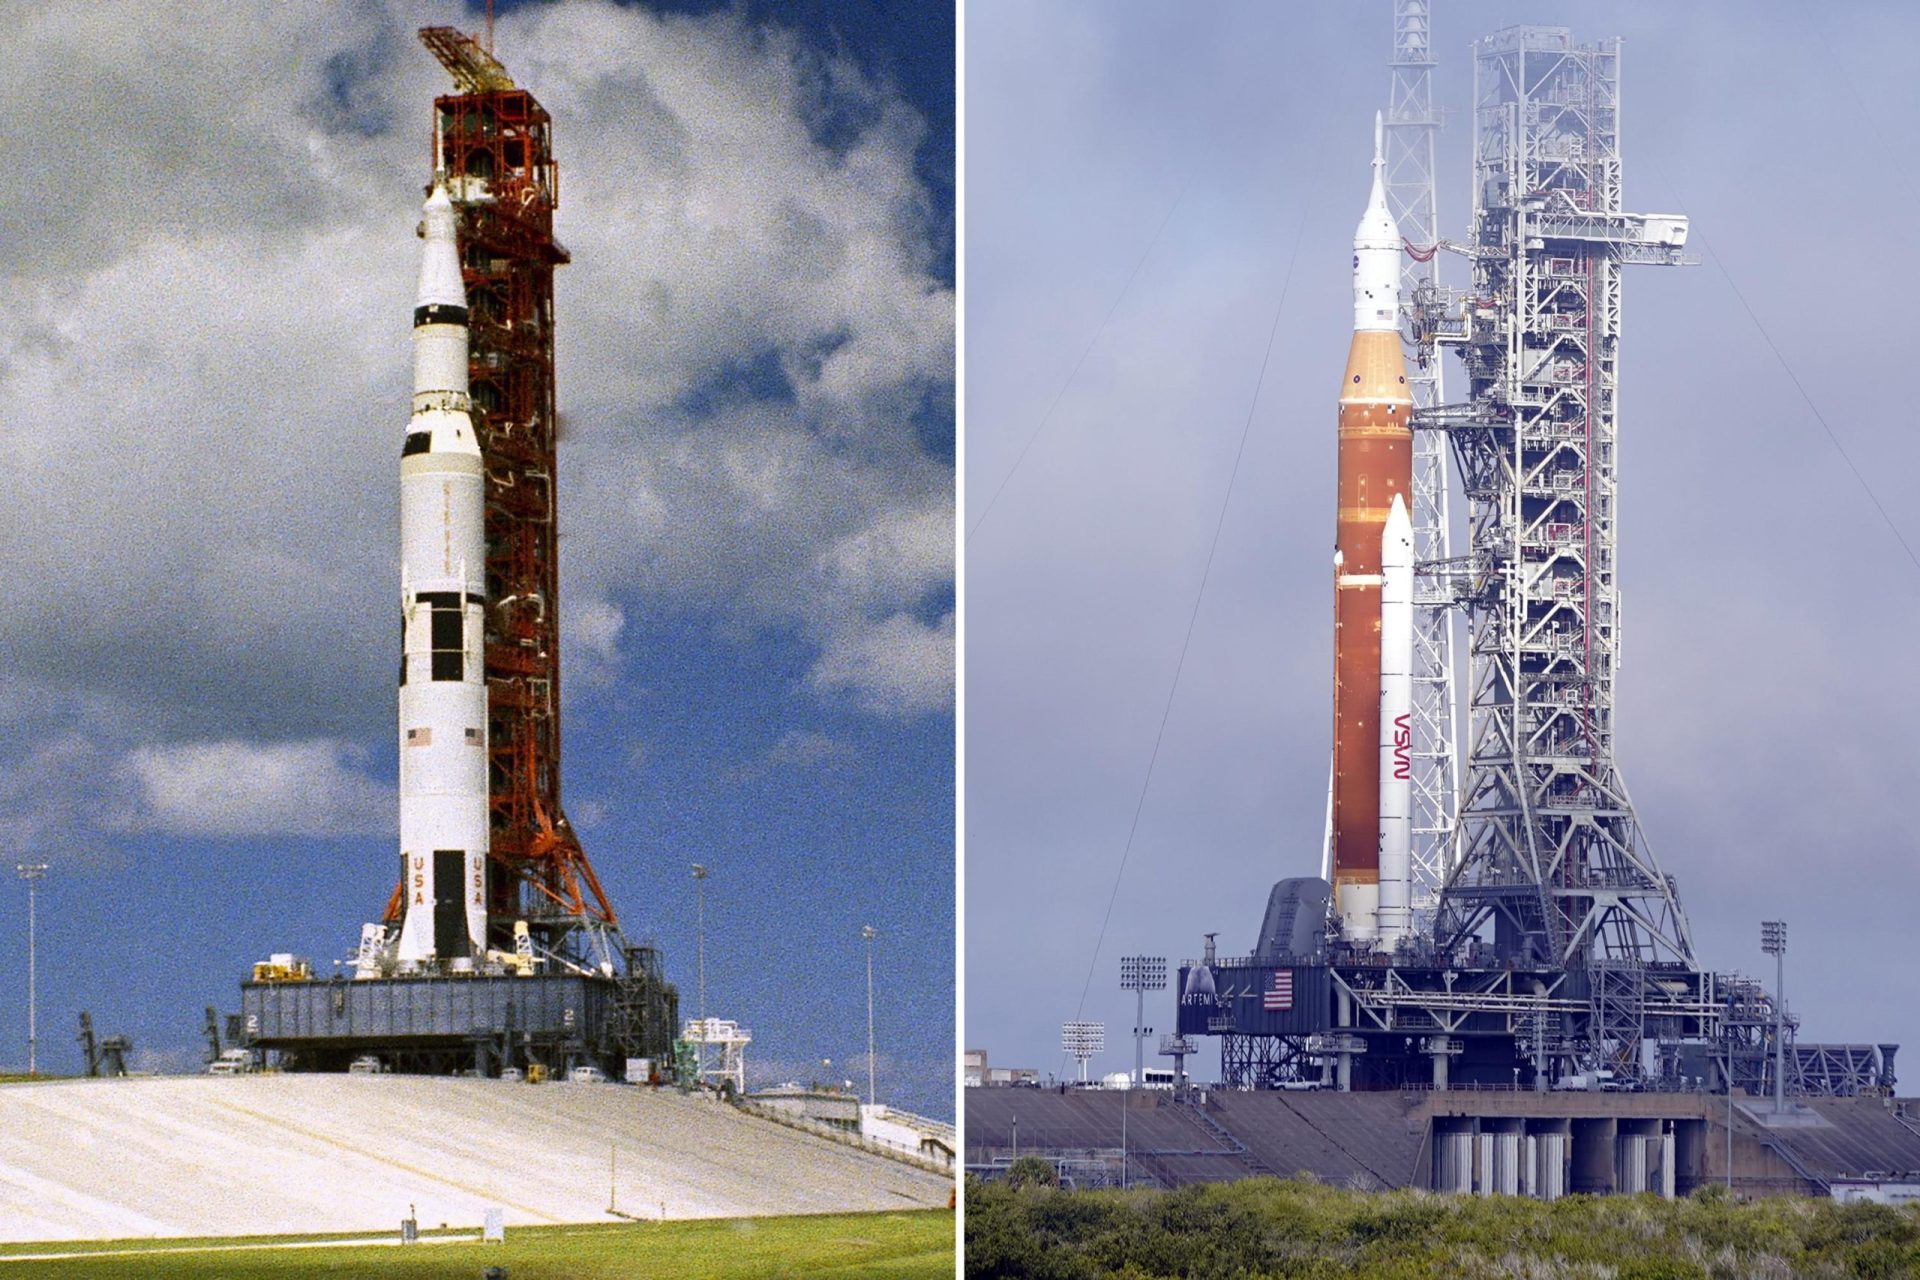 EXPLICACIÓN: La NASA prueba un nuevo cohete lunar, 50 años después del Apolo